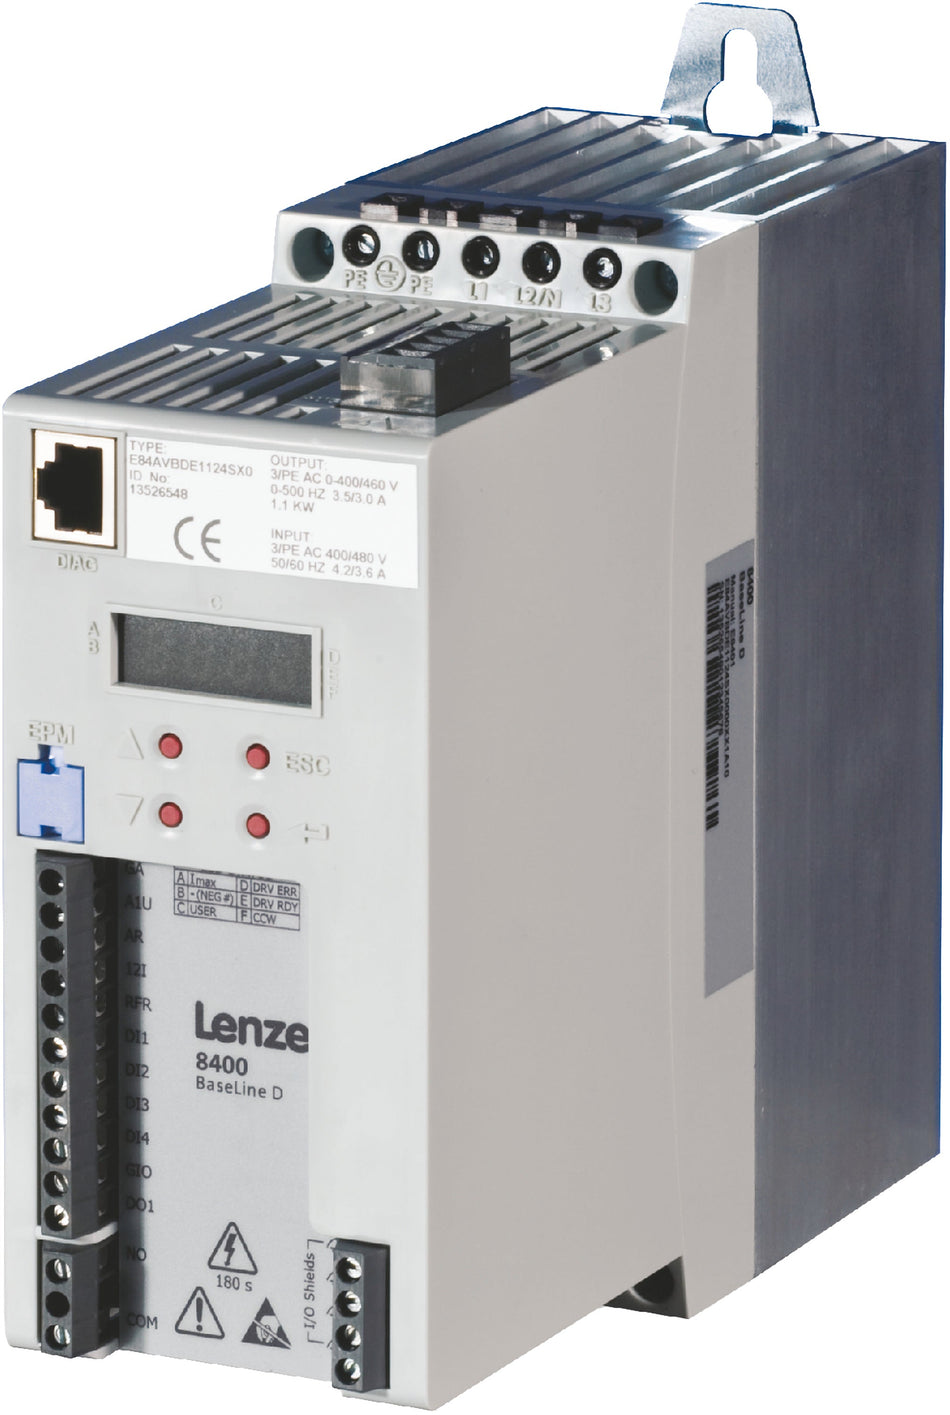 Lenze Inverter Drives 8400 BaseLine - E84AVBCE1524SX0 1.5 kW